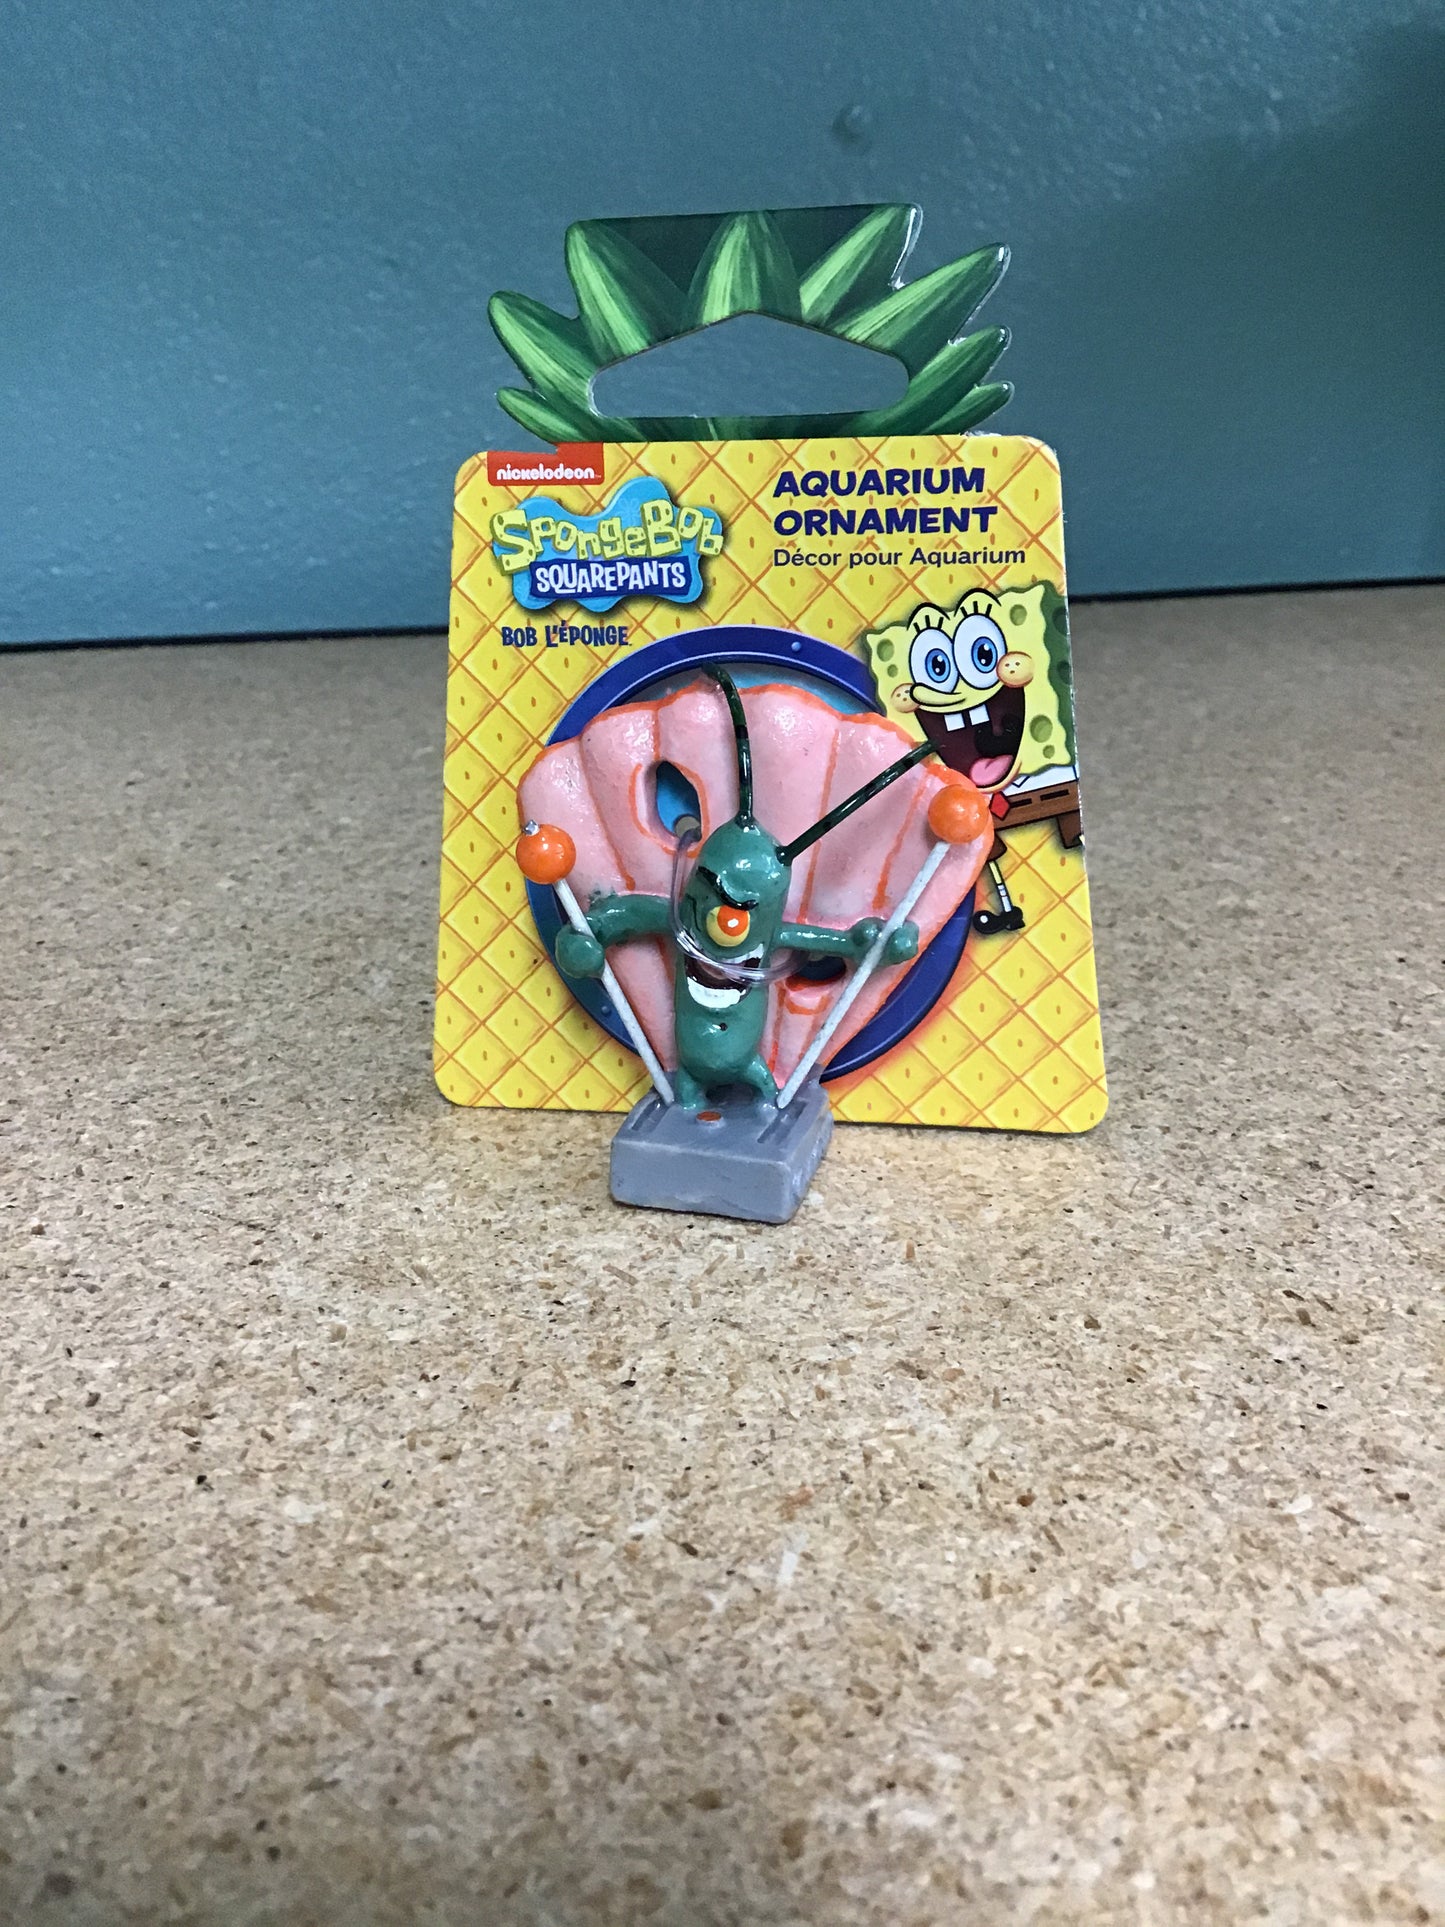 Plankton-Spongebob